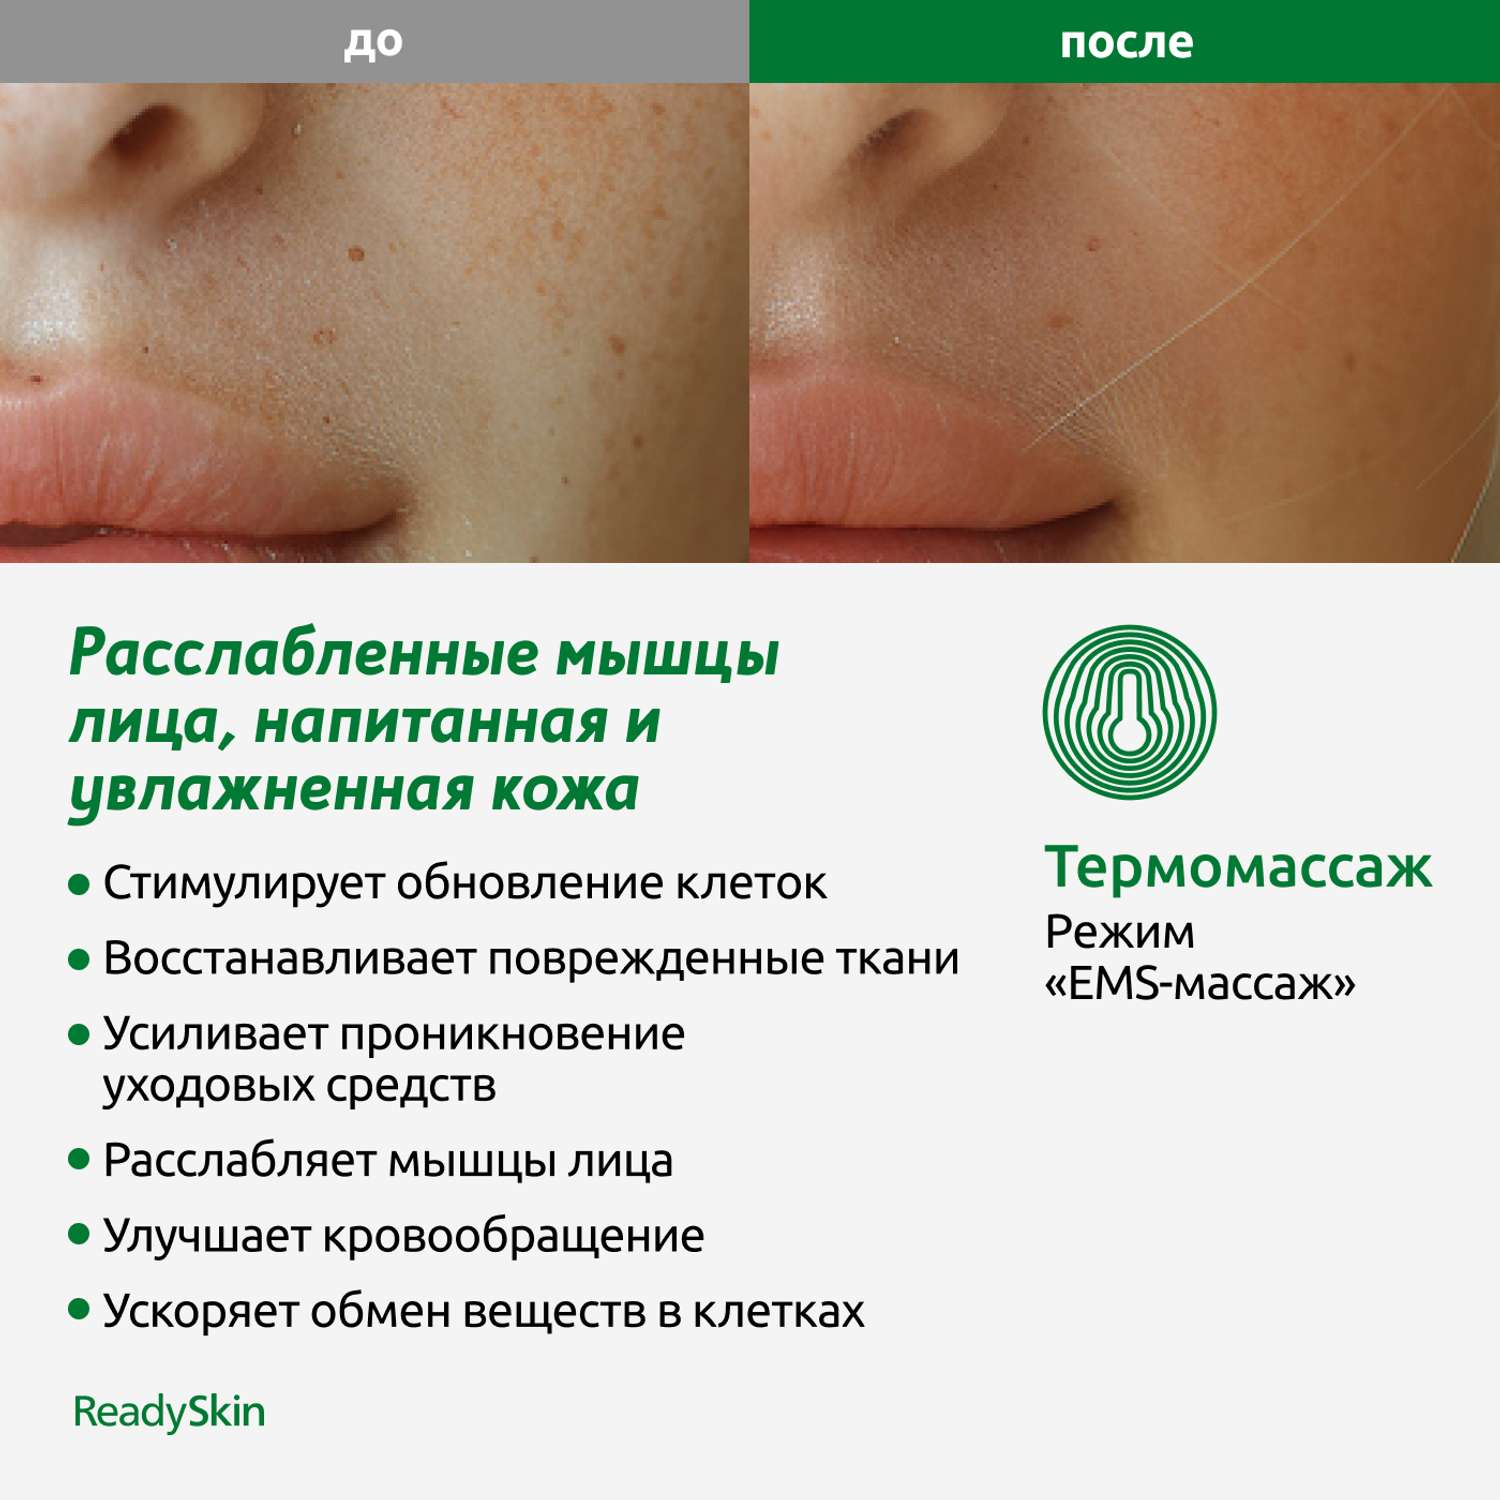 Прибор ReadySkin Octa для очищения и омоложения кожи - фото 11